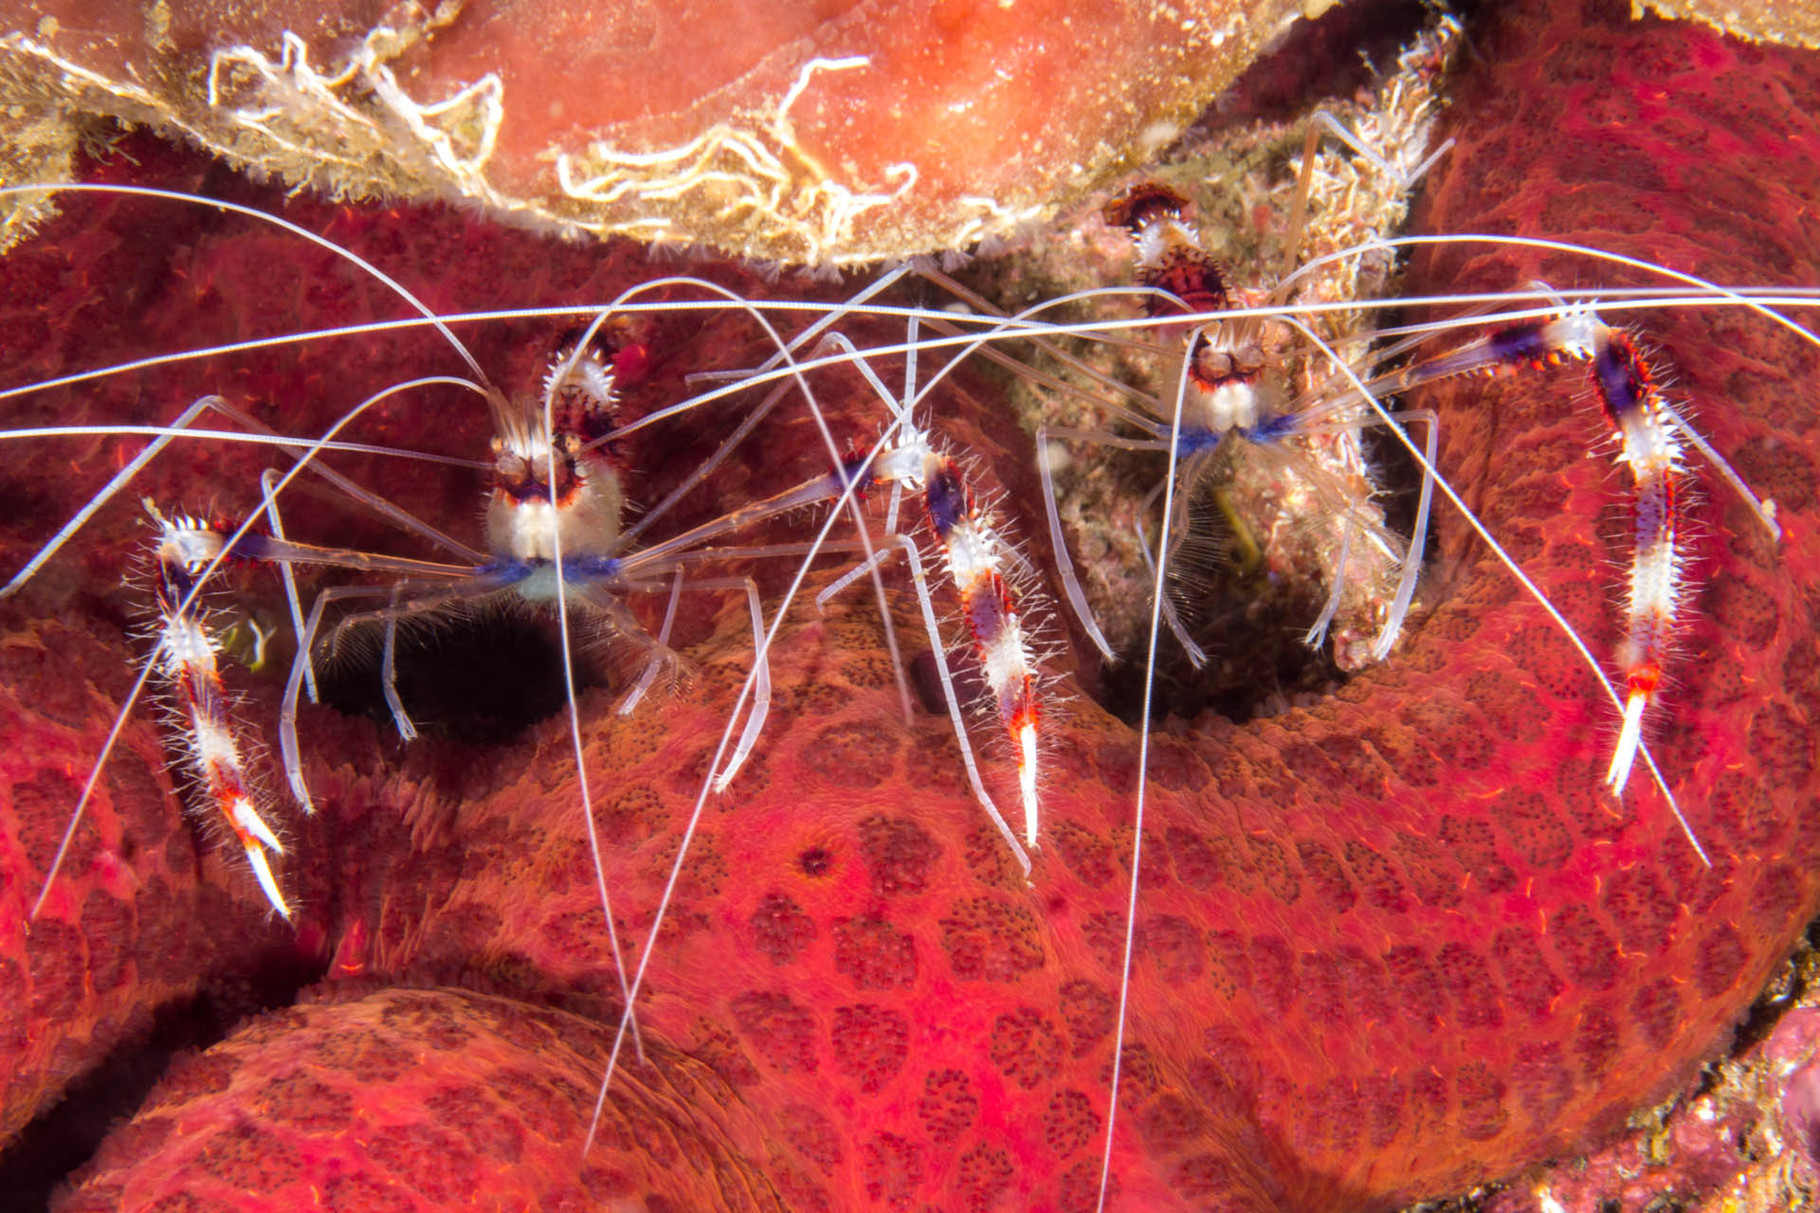 Banded cleaner shrimps